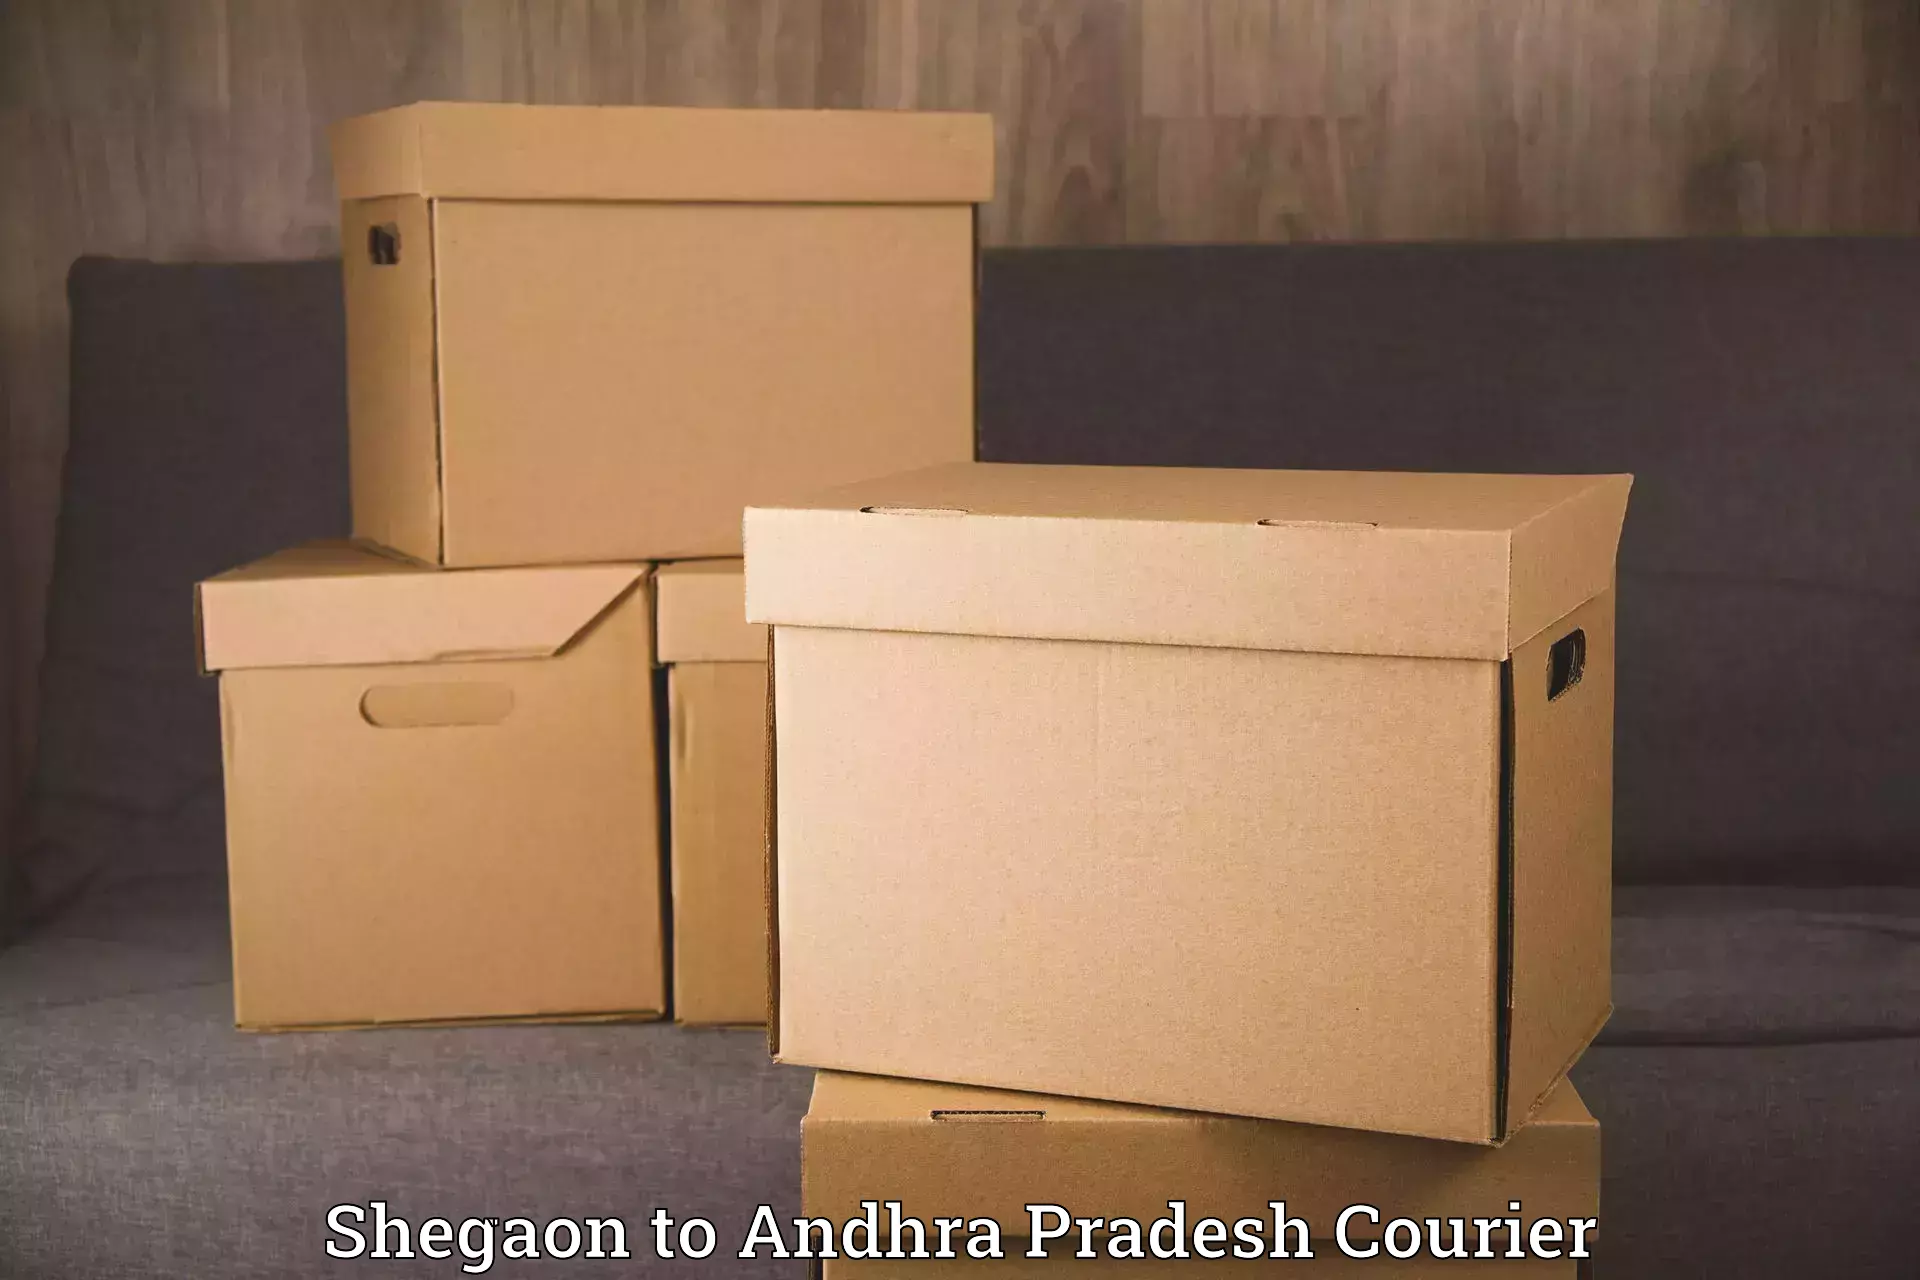 Furniture delivery service Shegaon to Chagallu